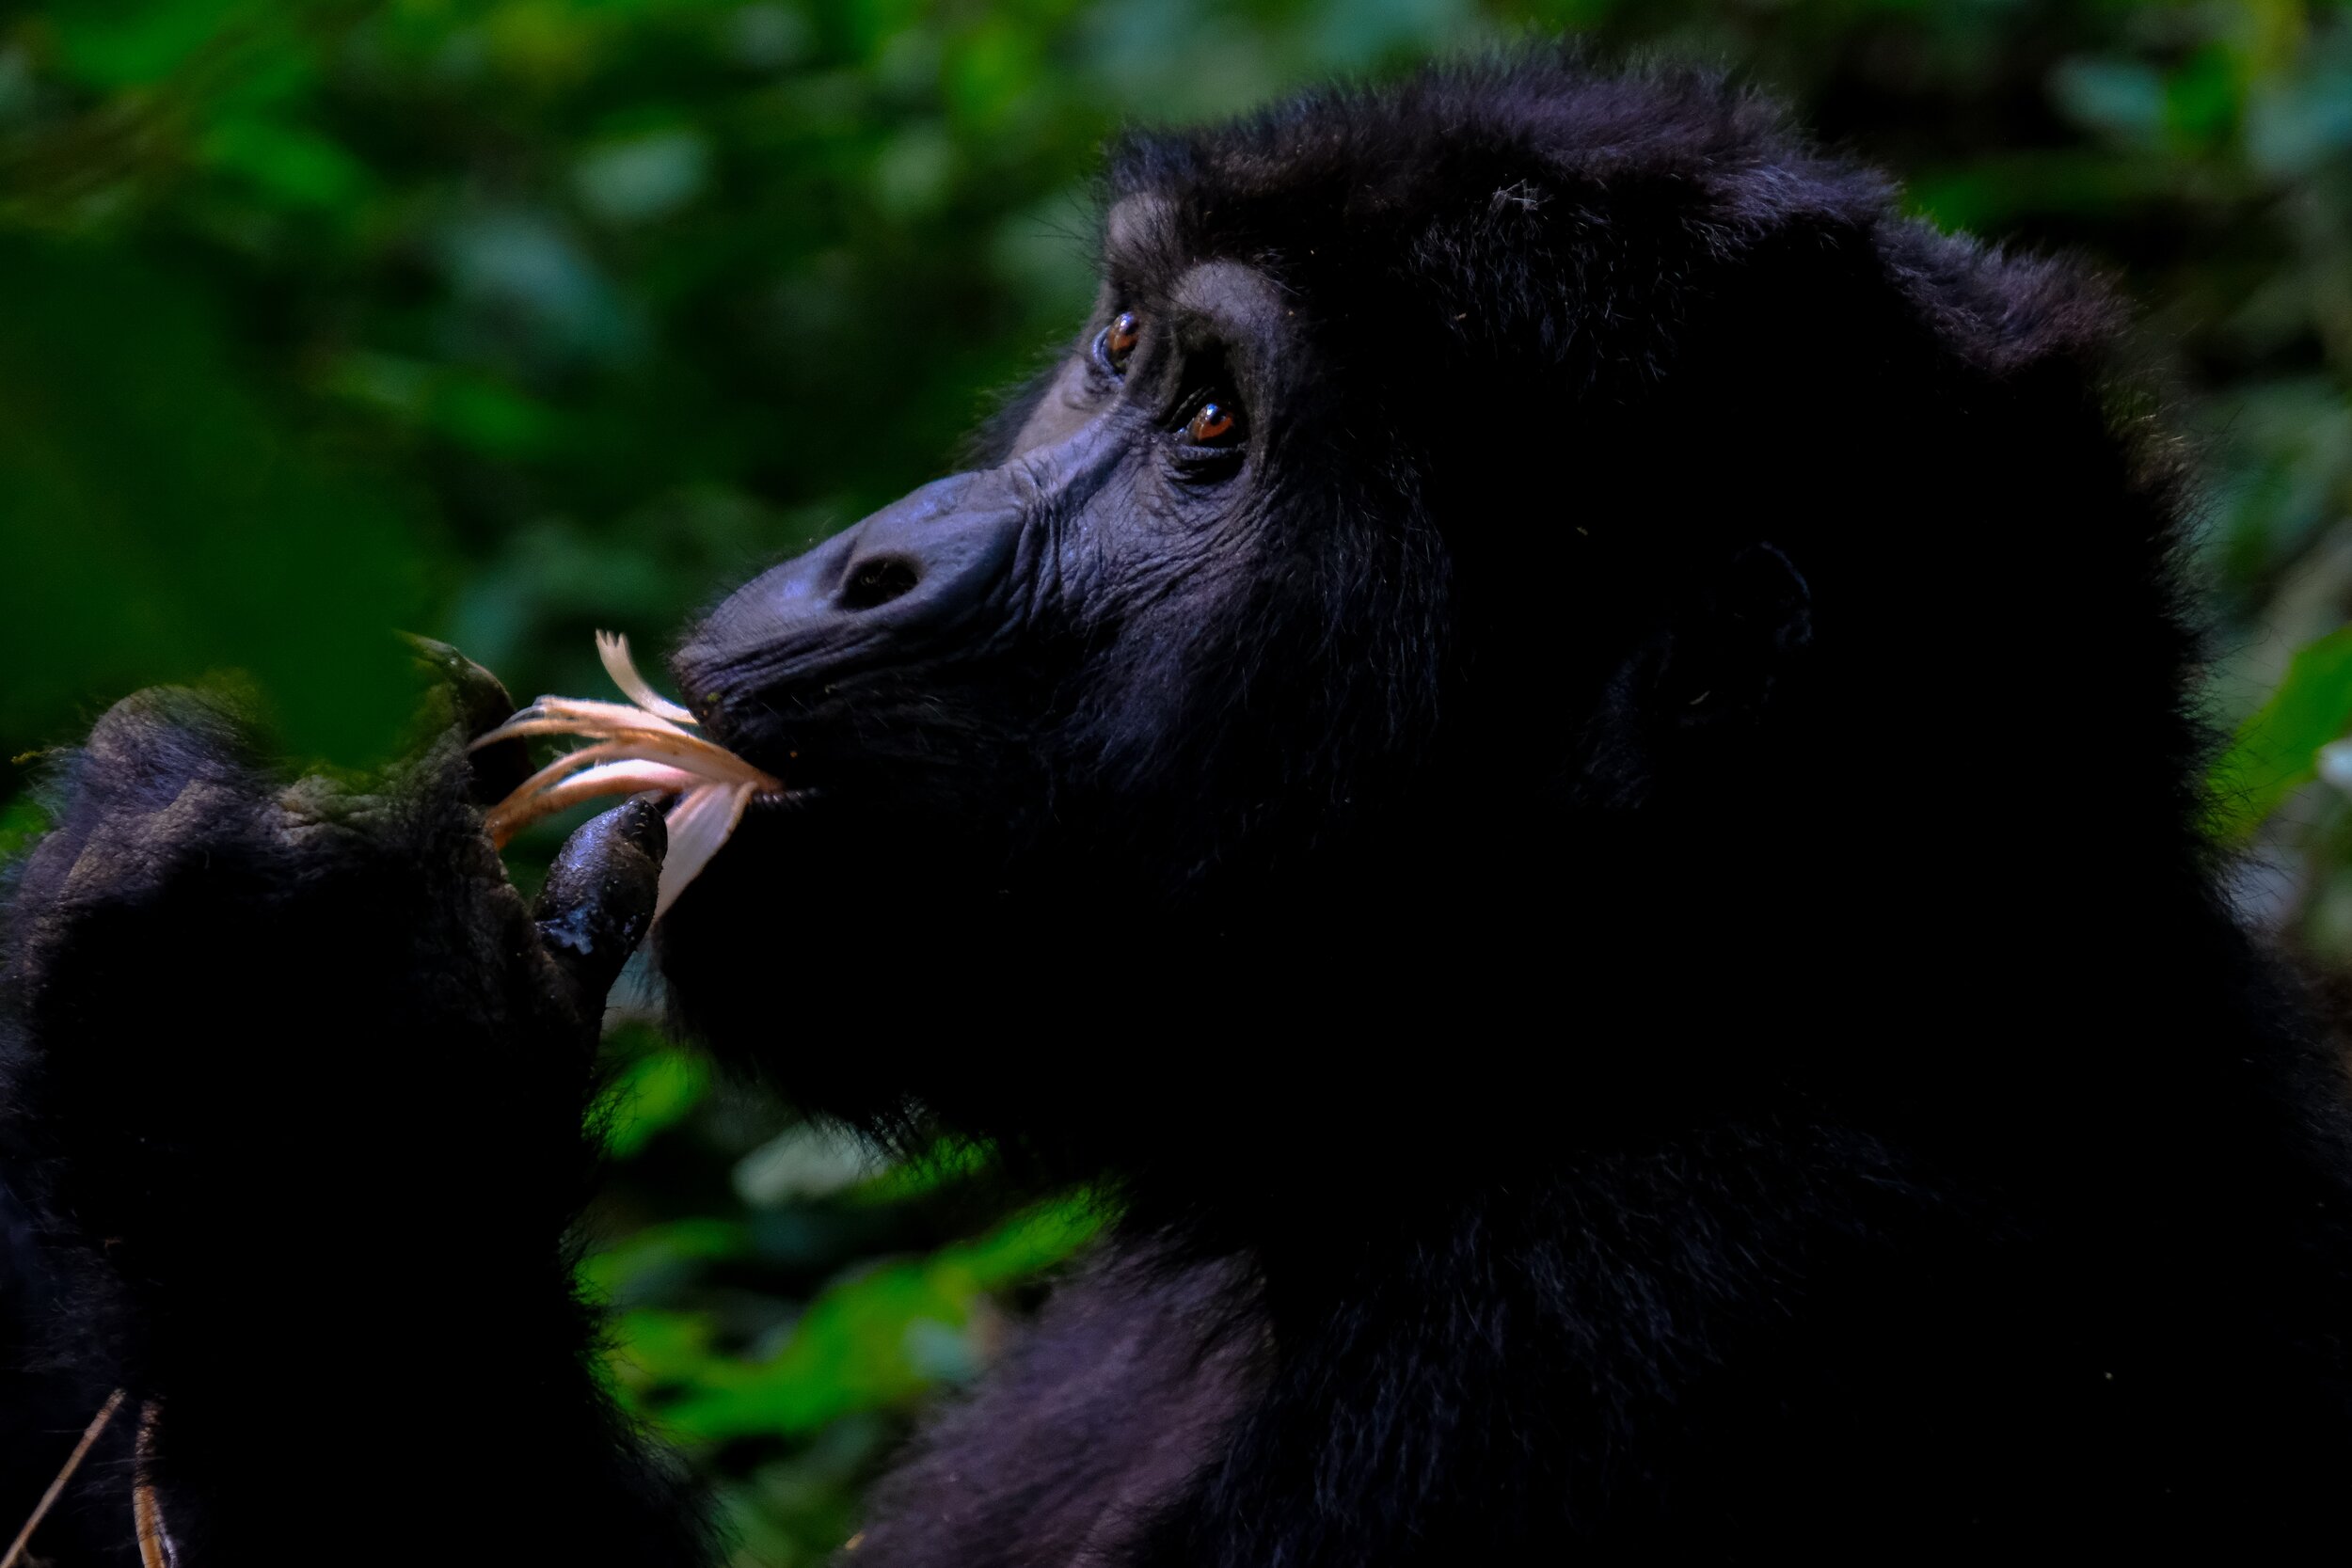 Chimpanzee, Uganda